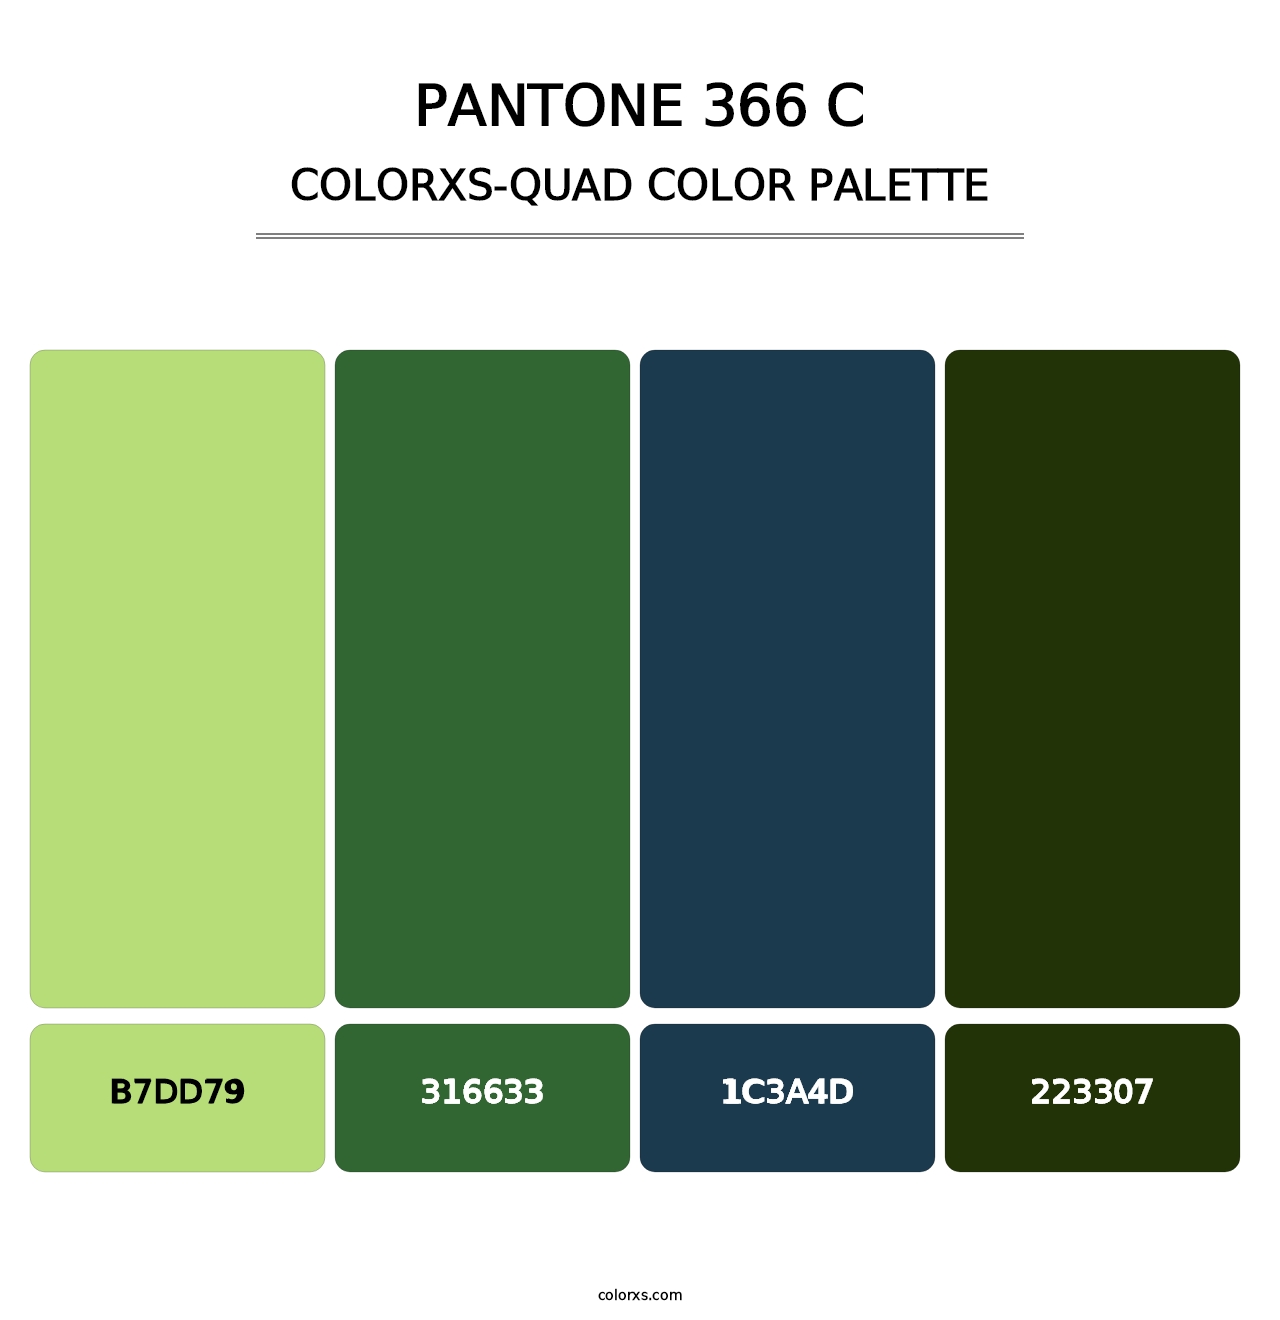 PANTONE 366 C - Colorxs Quad Palette